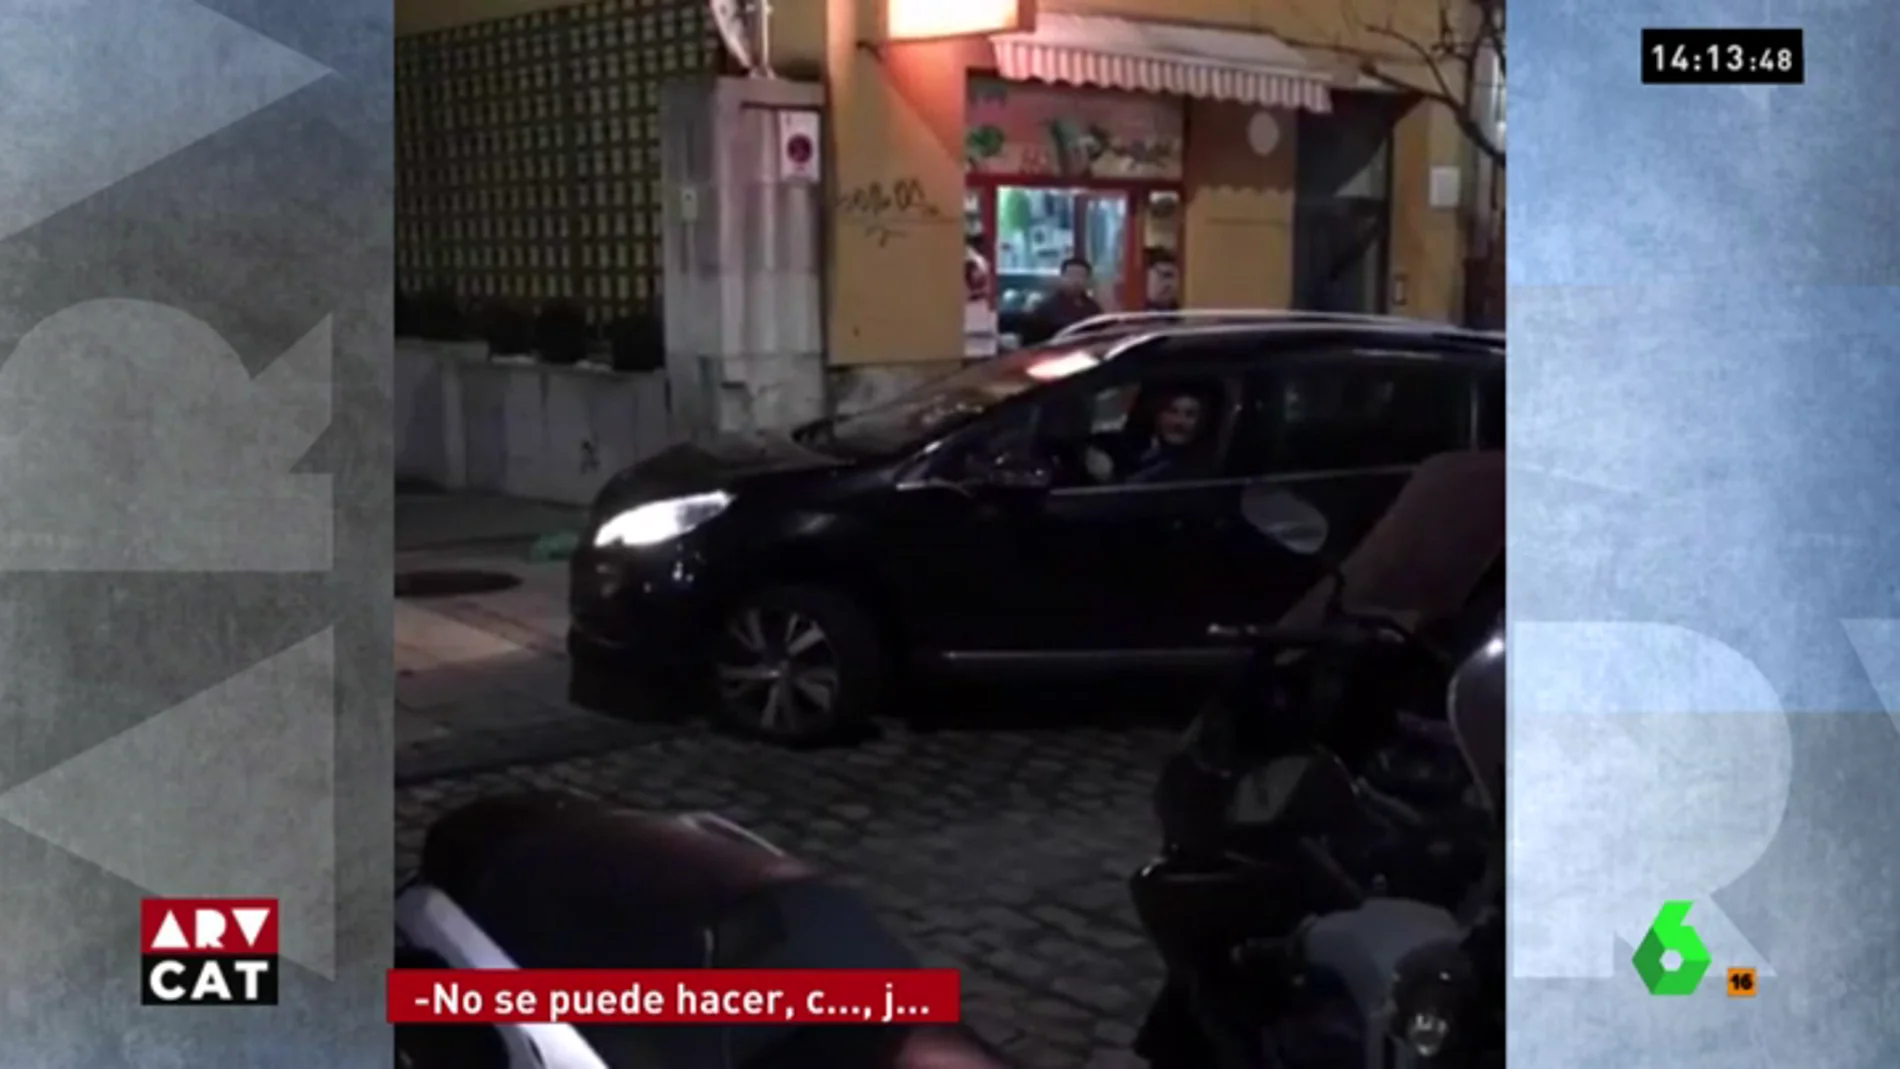 Increpan a Miguel Ángel Revilla por conducir en dirección contraria por una calle de Santander en Nochebuena: "¡Que sople!"